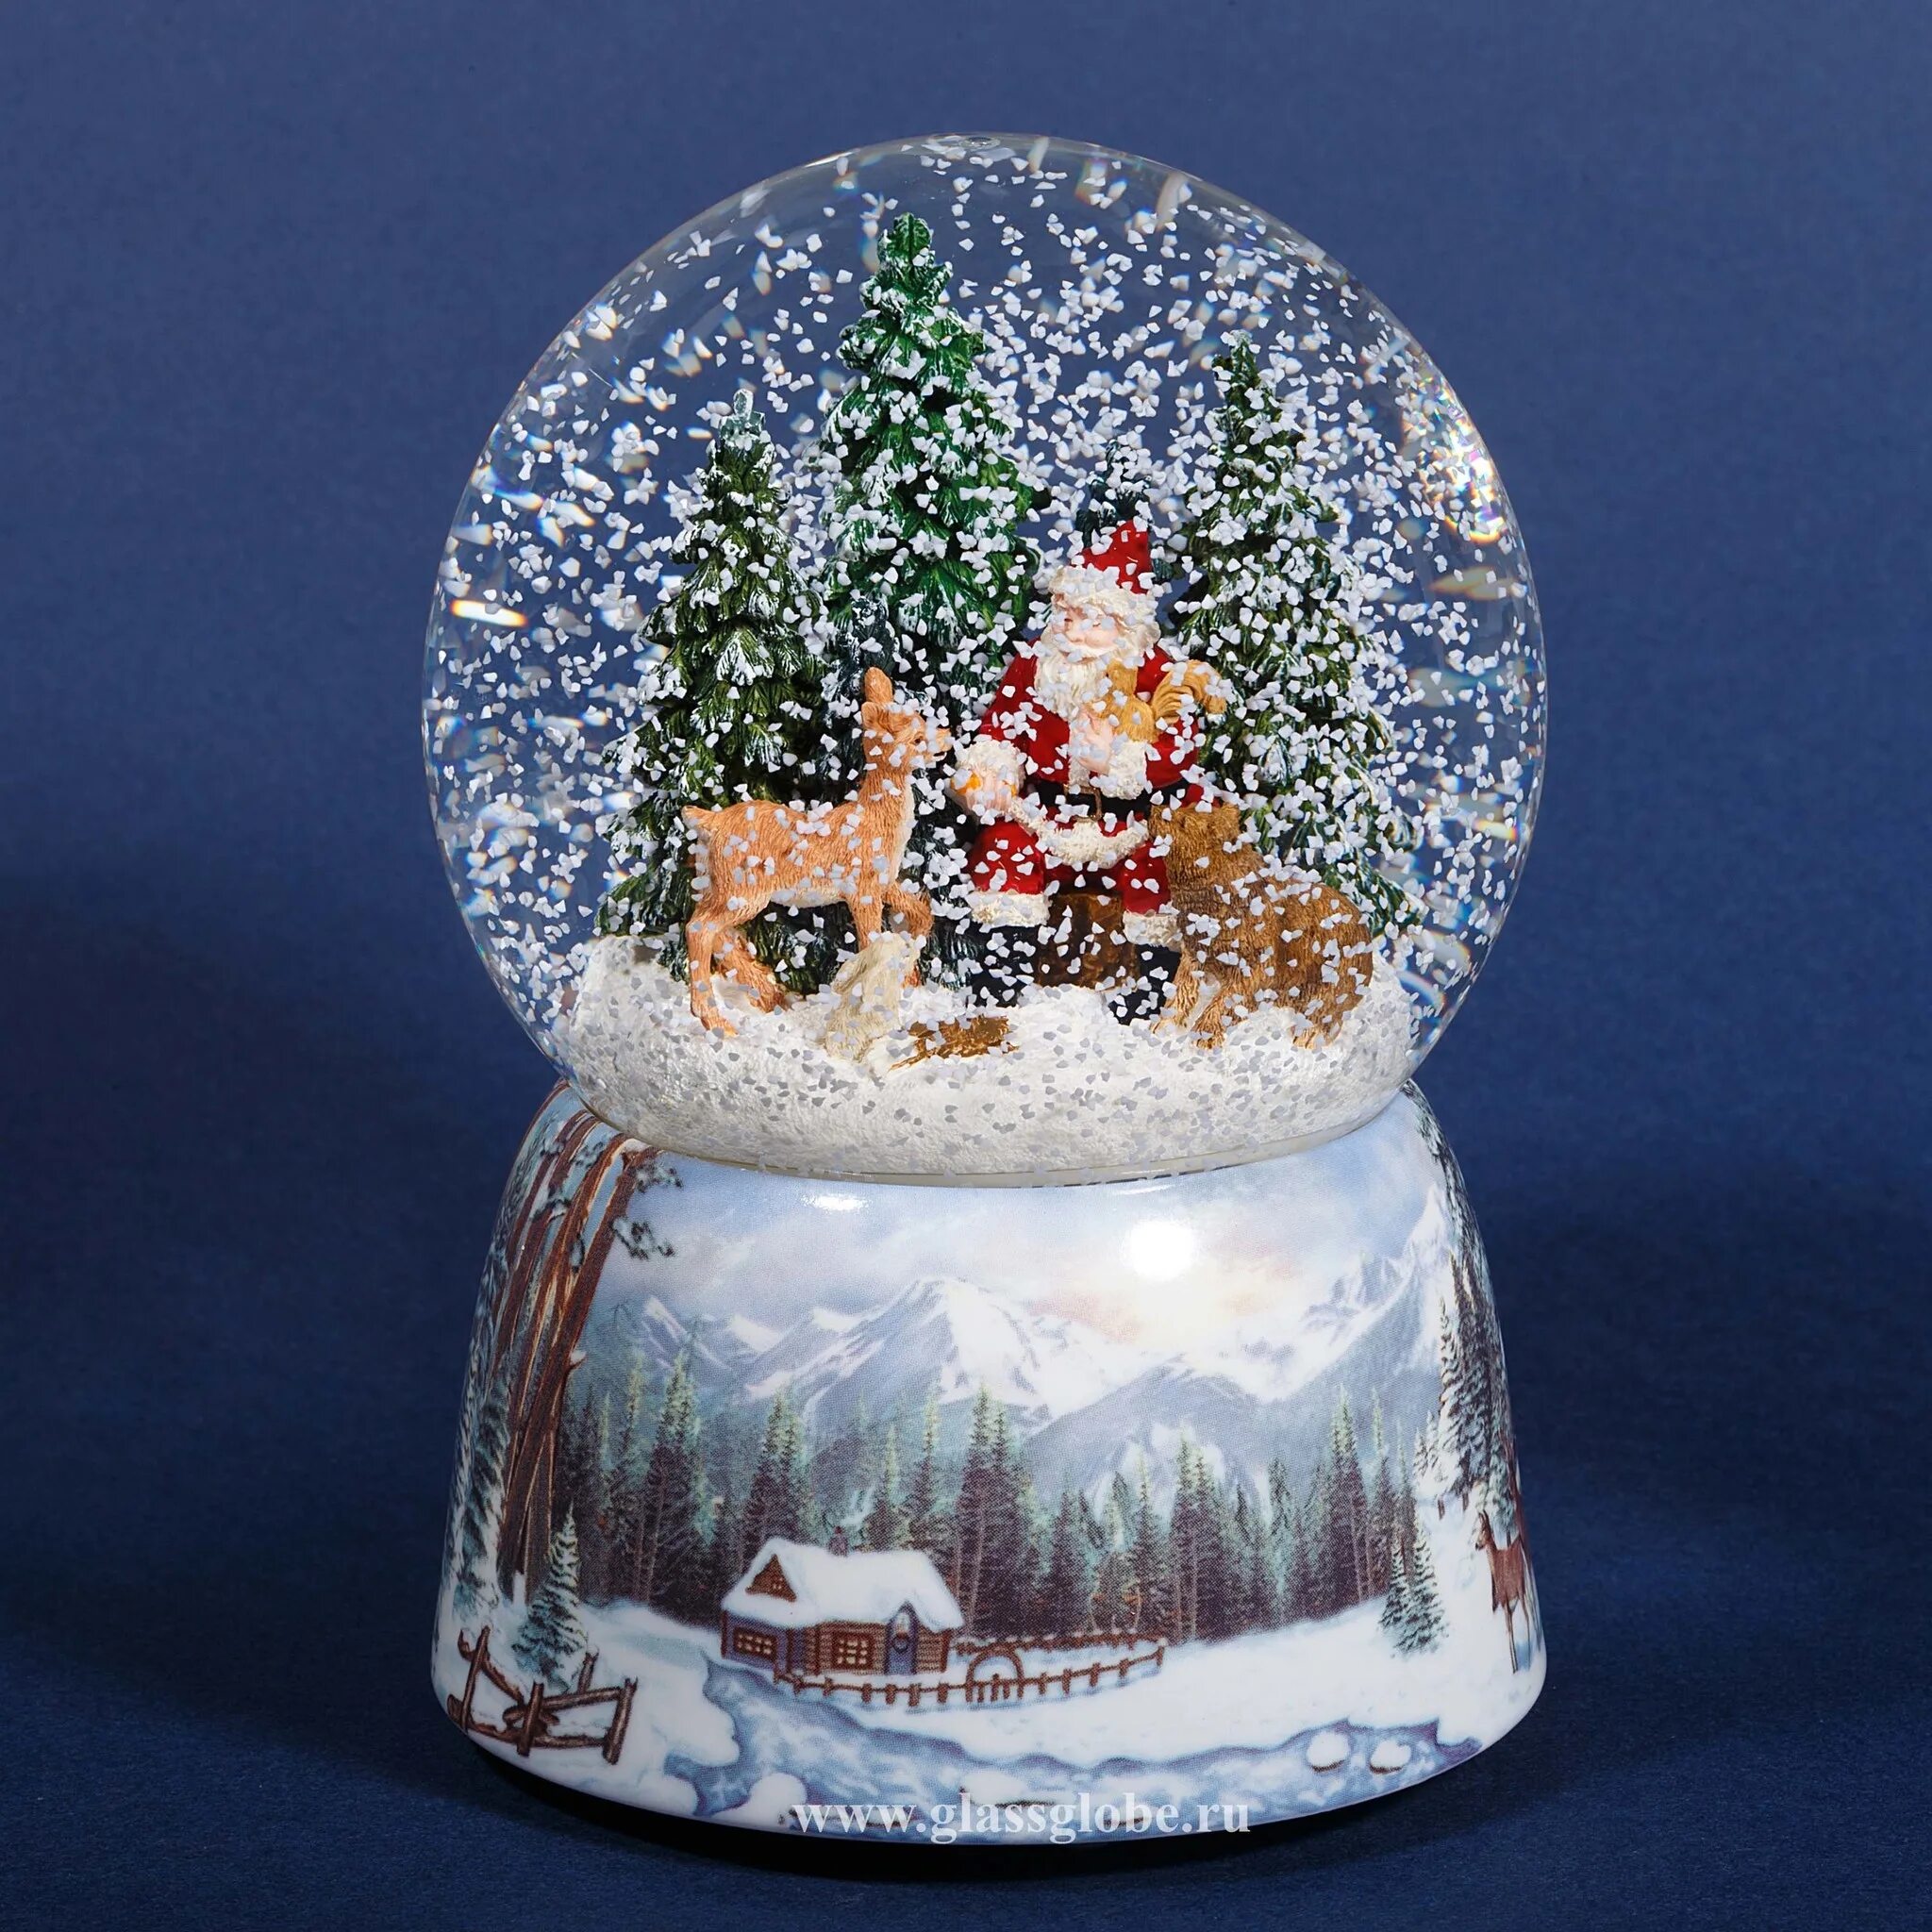 Стеклянный шар снег. Снежный шар Luville. Снежный шар Lefard новогодний 175-190. Стеклянный шар со снегом. Новогодний стеклянный шар со снегом.